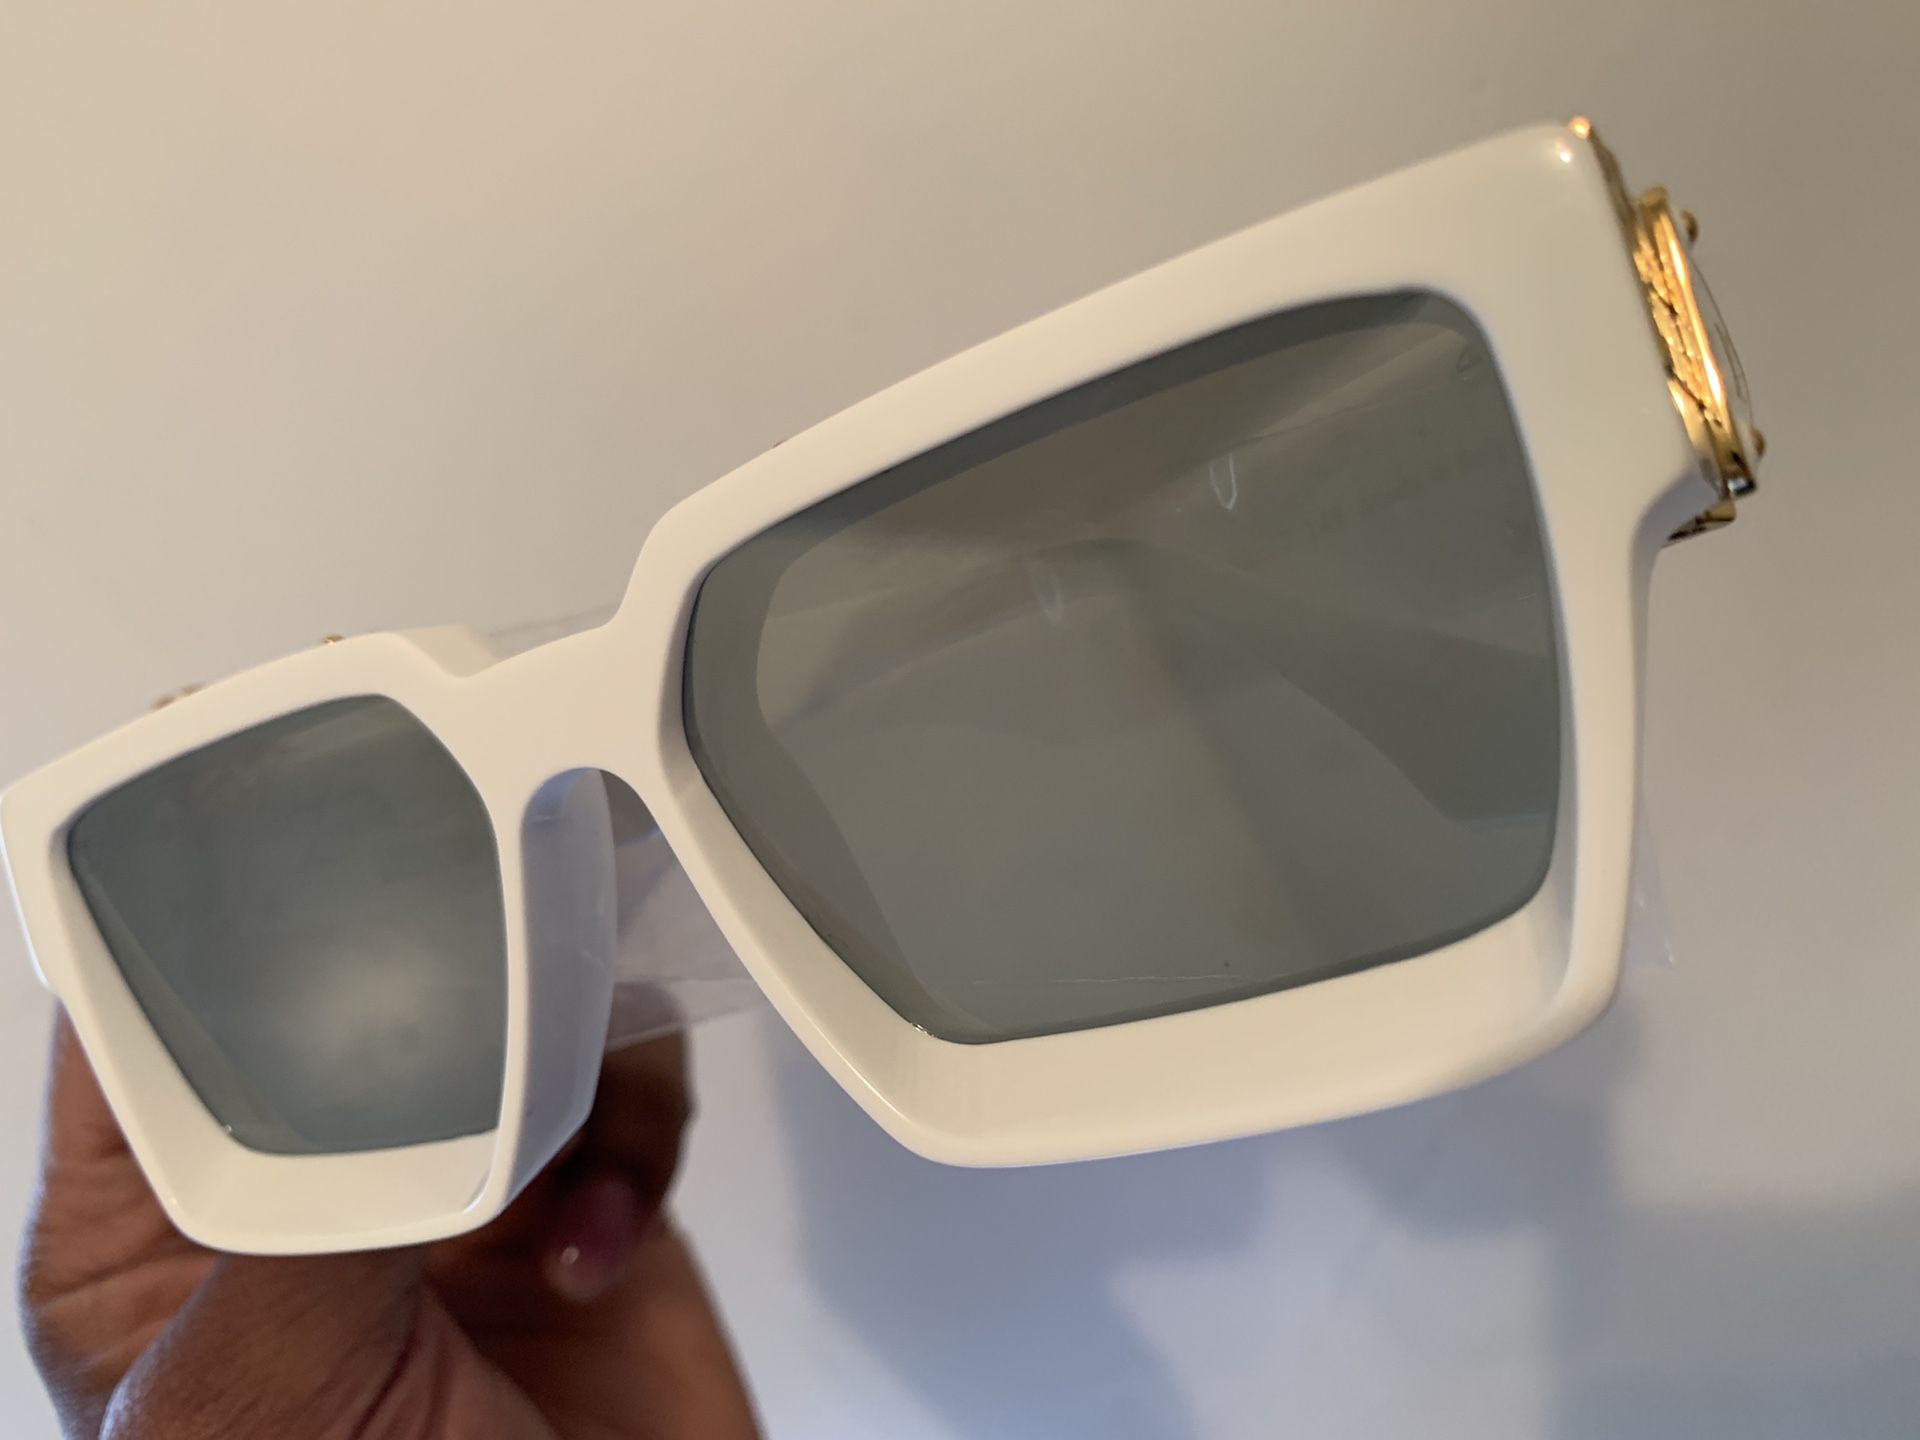 Louis Vuitton Millionaire 1.1 Sunglasses By Virgil Abloh Review